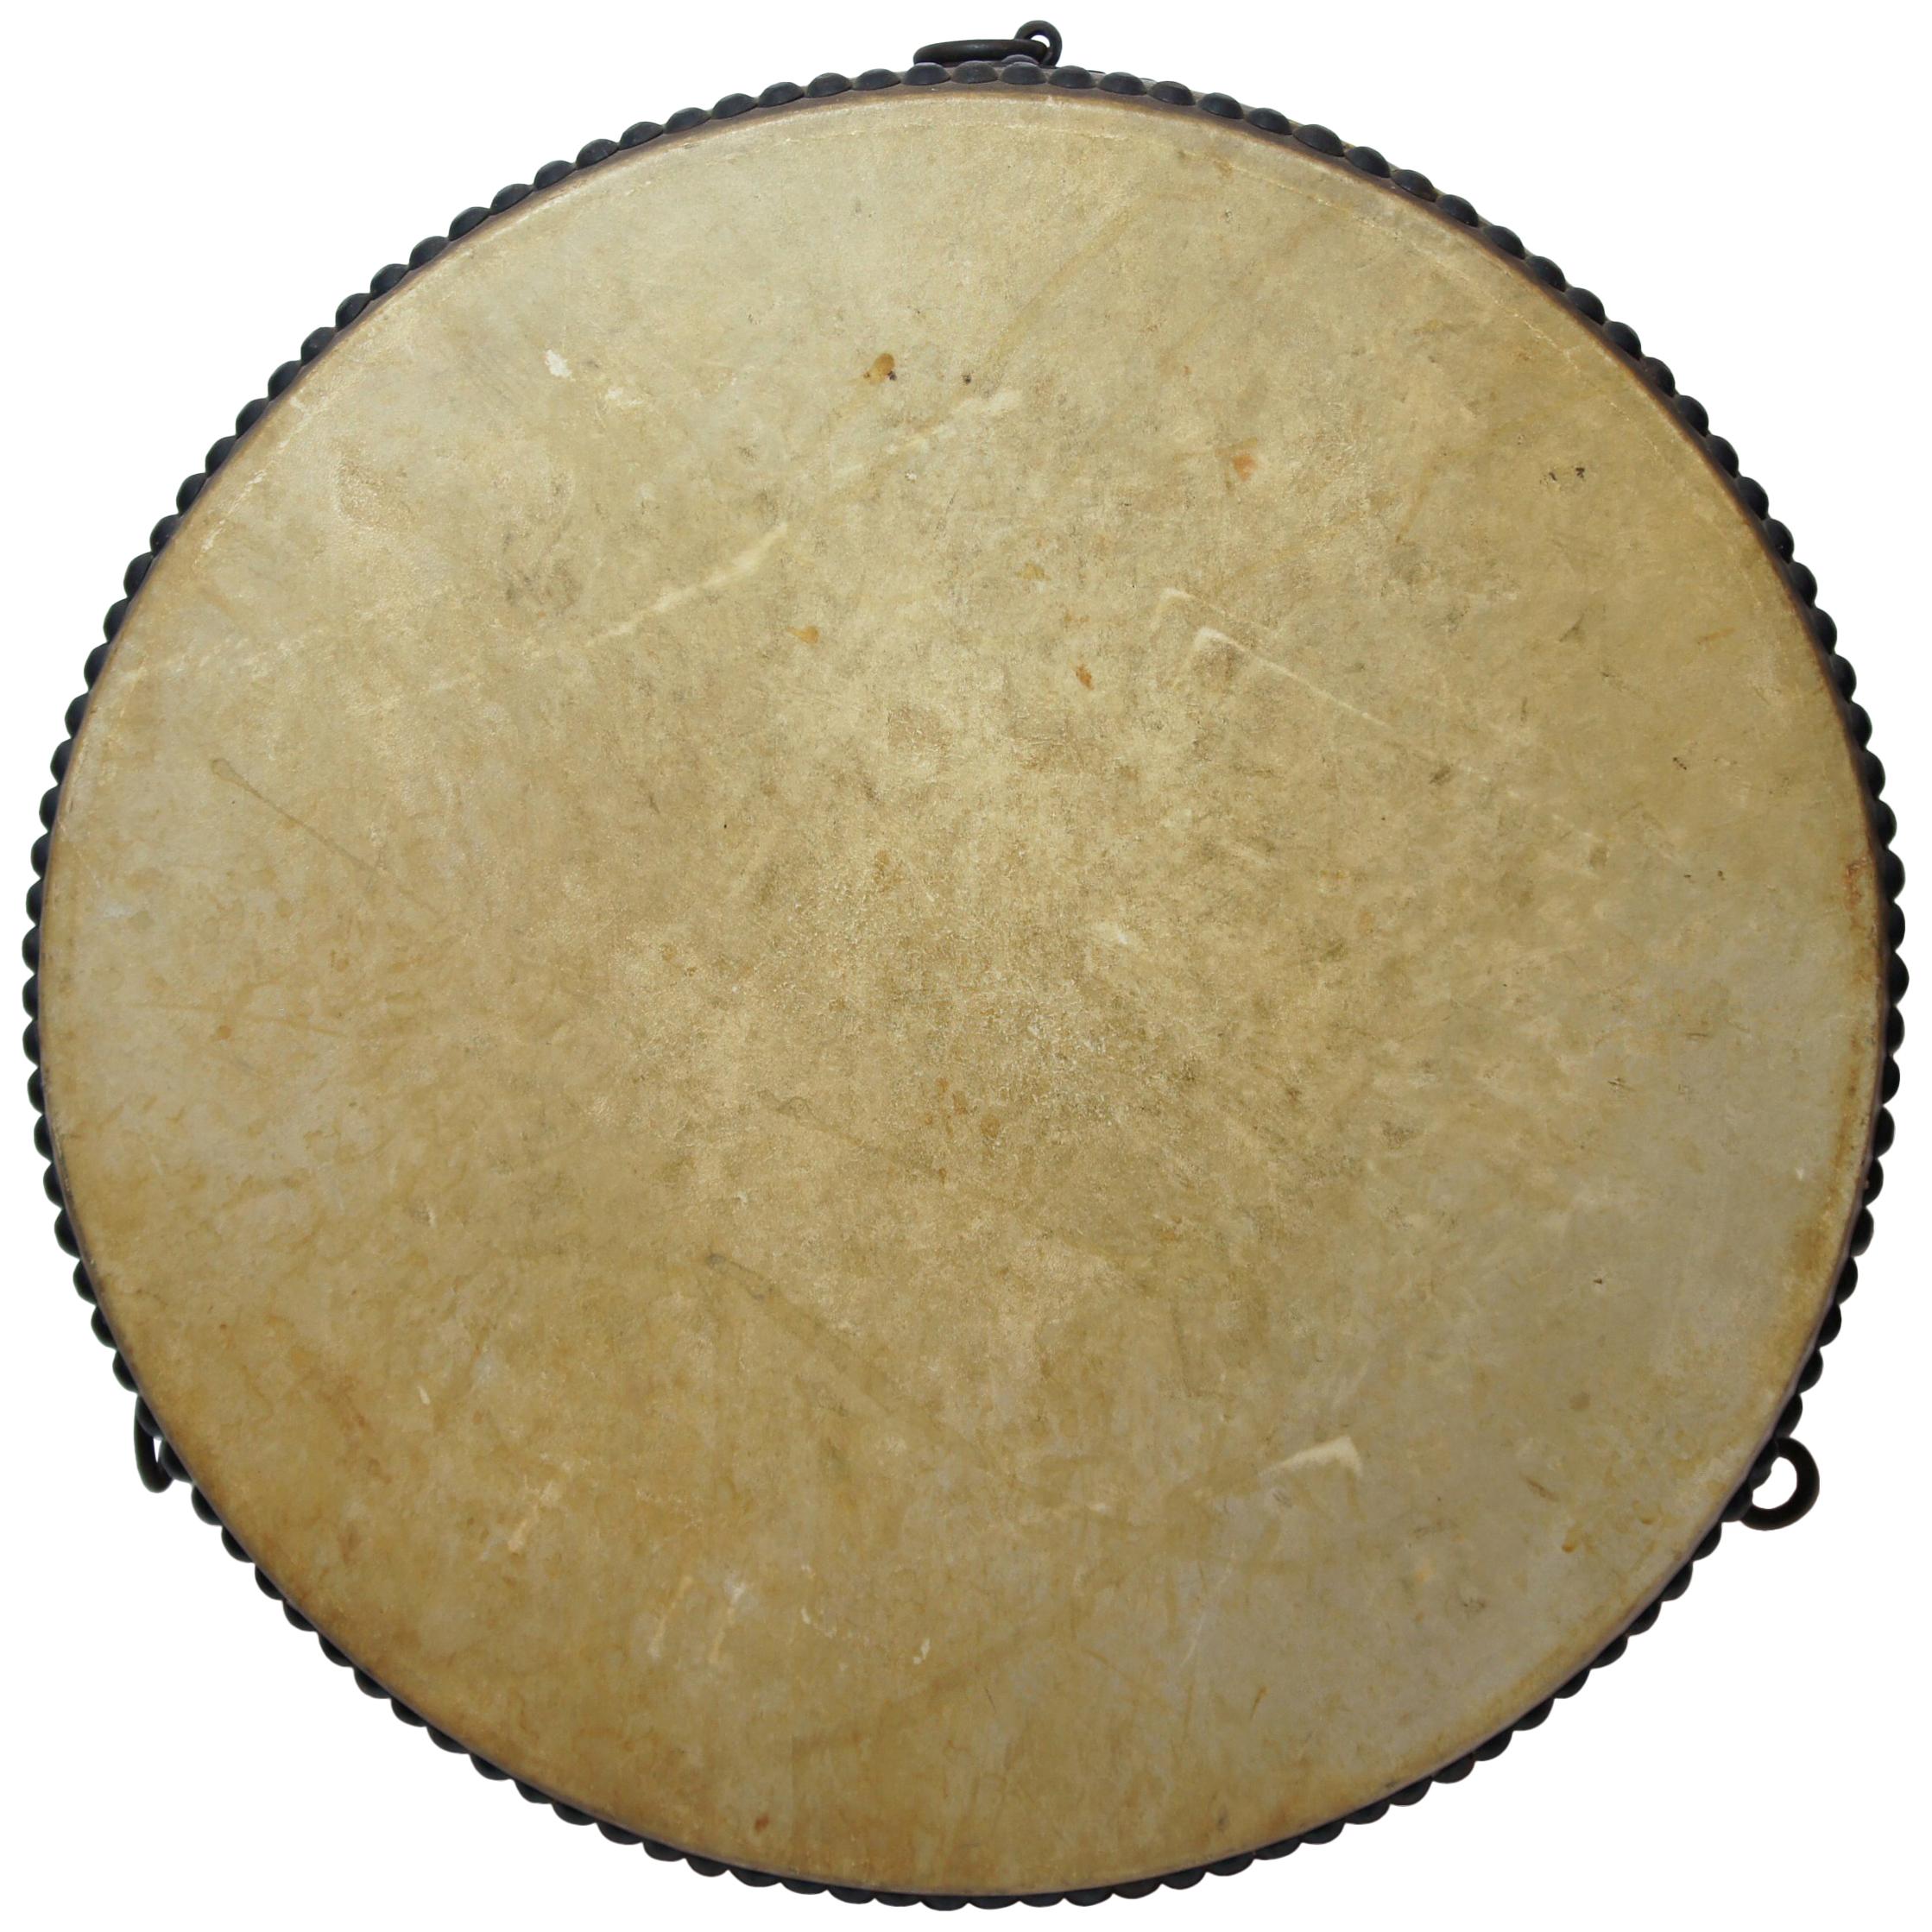 Taiko Drum - 2 For Sale on 1stDibs | buy taiko drum, taiko drums 